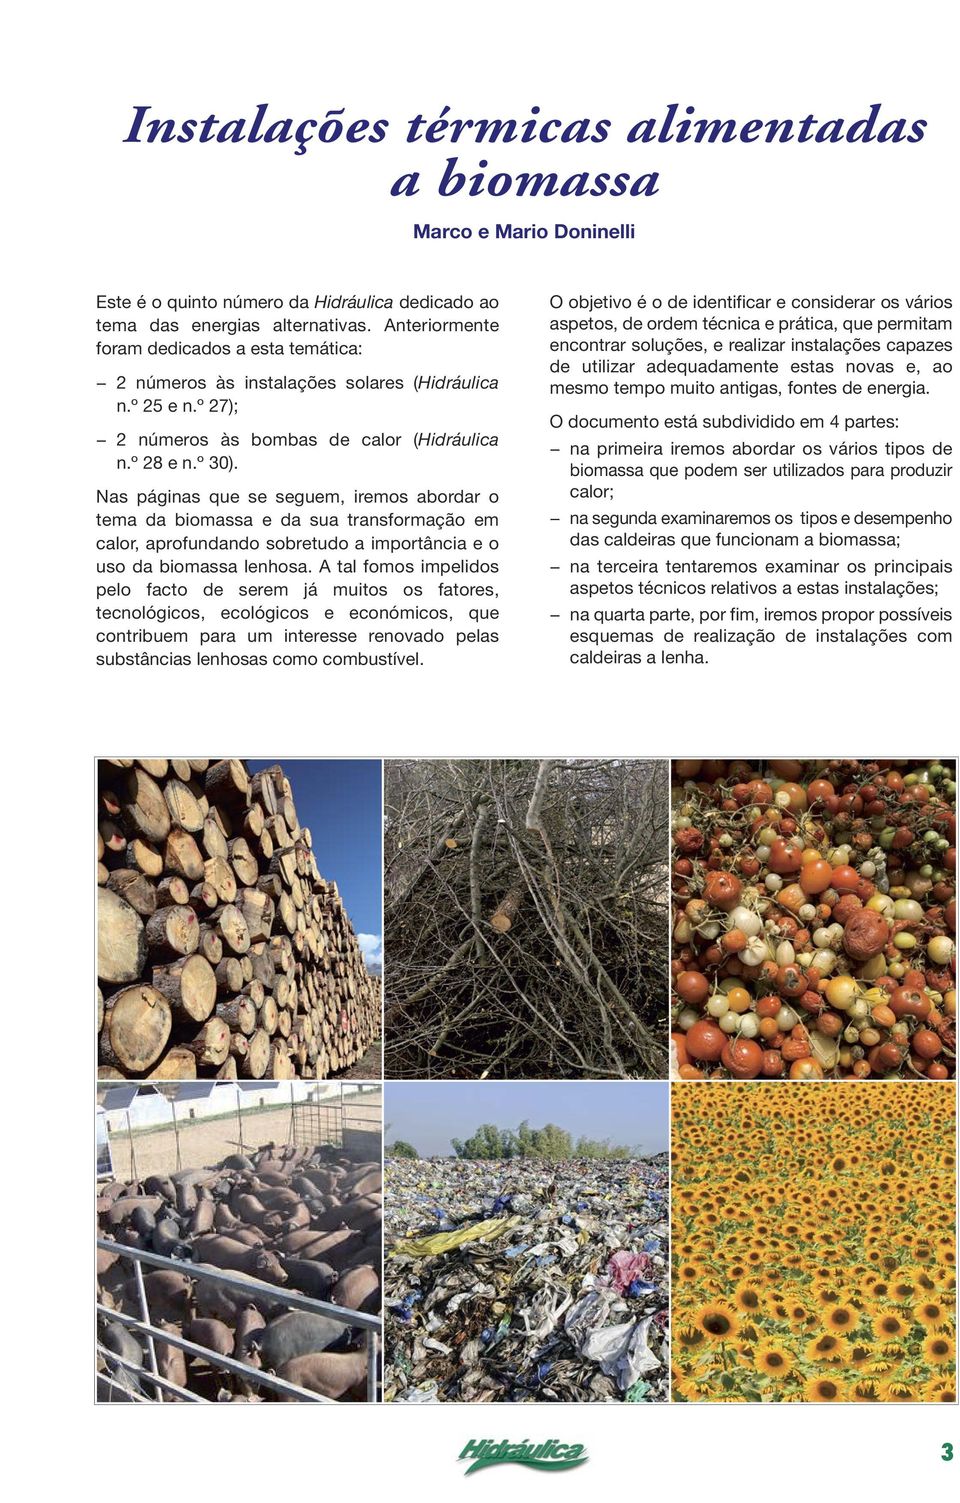 Nas páginas que se seguem, iremos abordar o tema da biomassa e da sua transformação em calor, aprofundando sobretudo a importância e o uso da biomassa lenhosa.